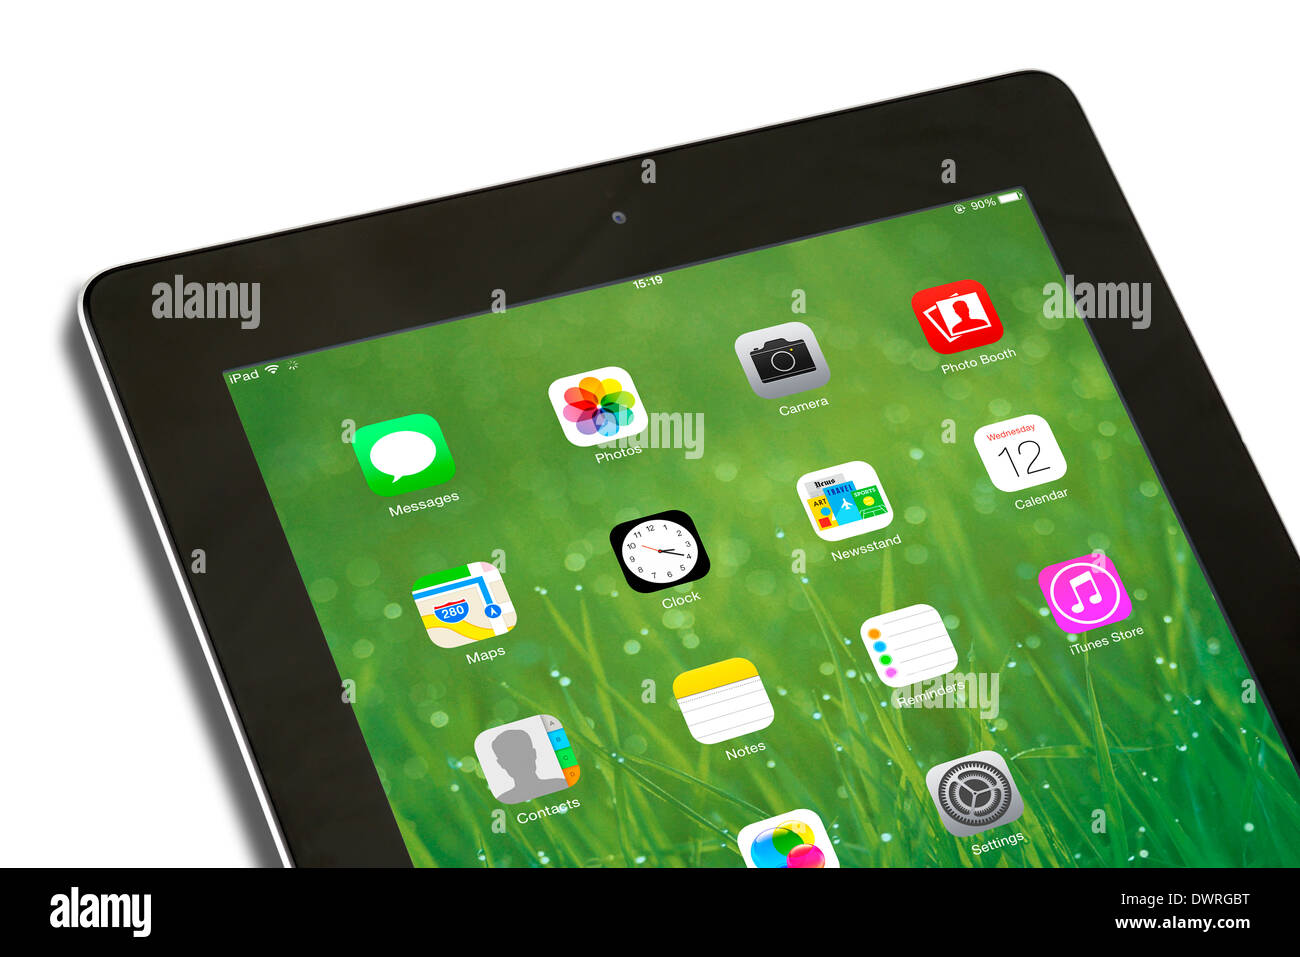 IOS 7.1 pantalla de inicio en un Apple iPad 4ª generación retina display tablet pc Foto de stock